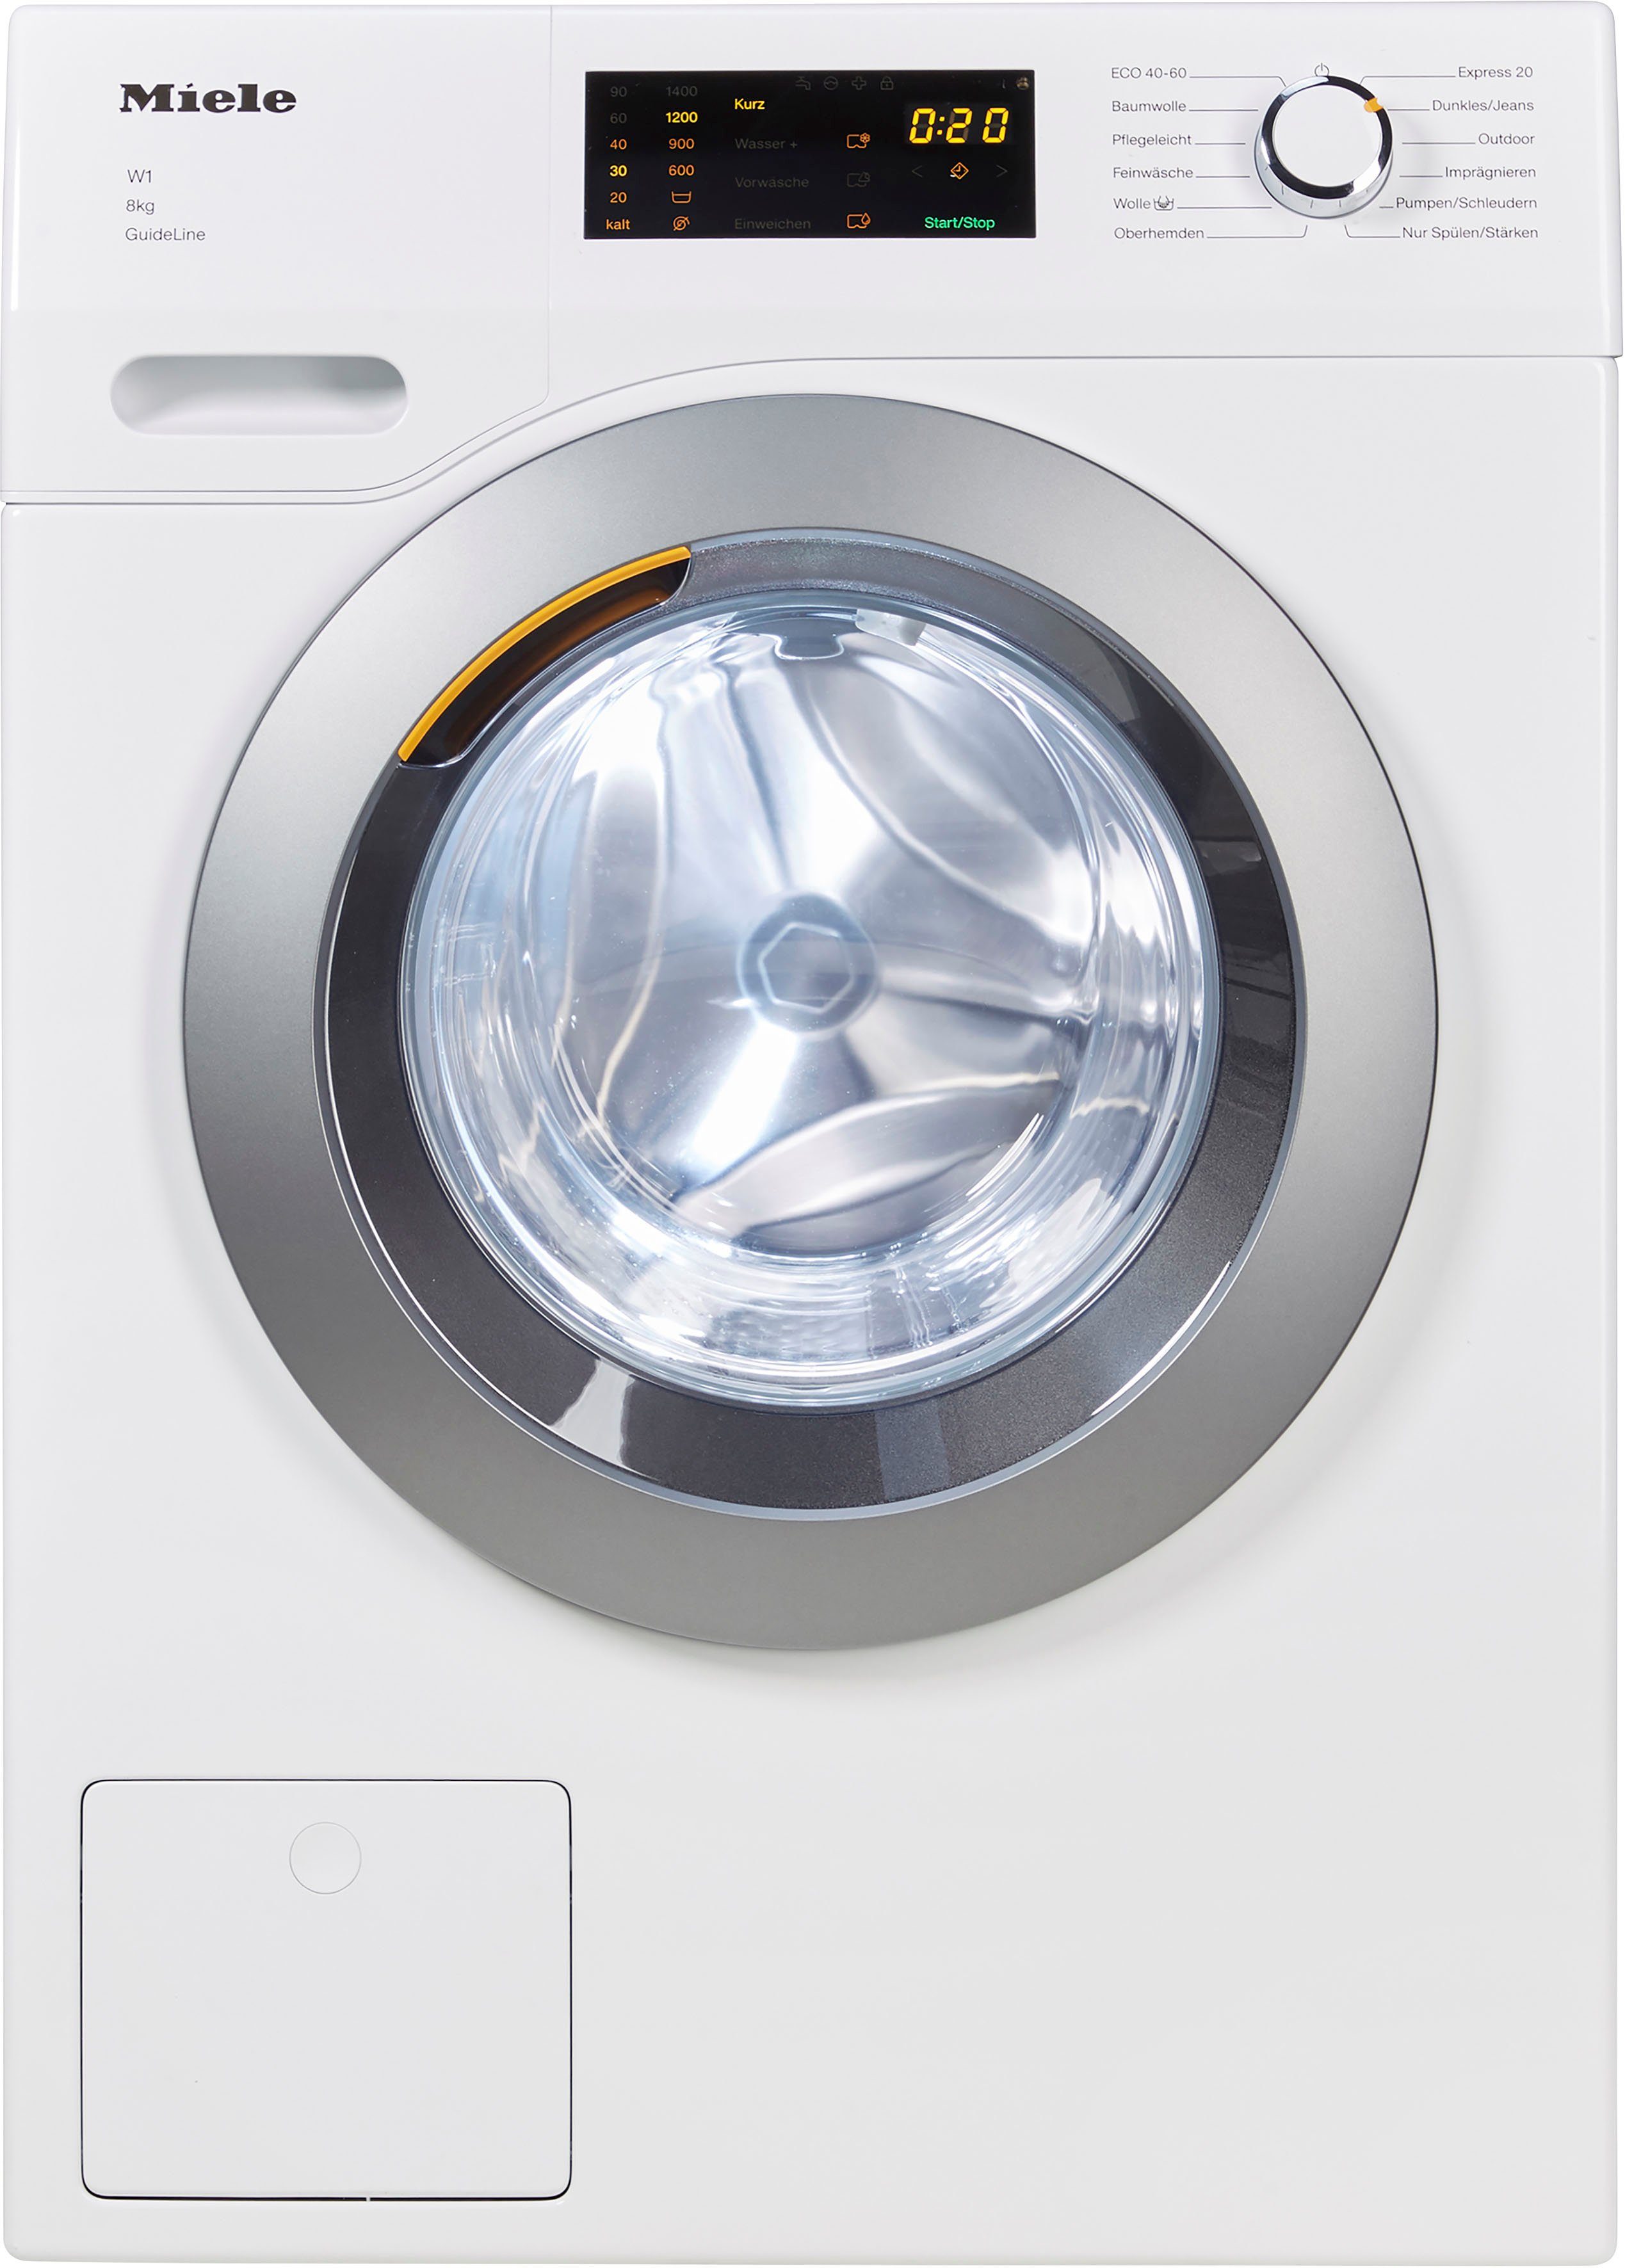 Miele Waschmaschine, ProfiEco Motor online kaufen | OTTO